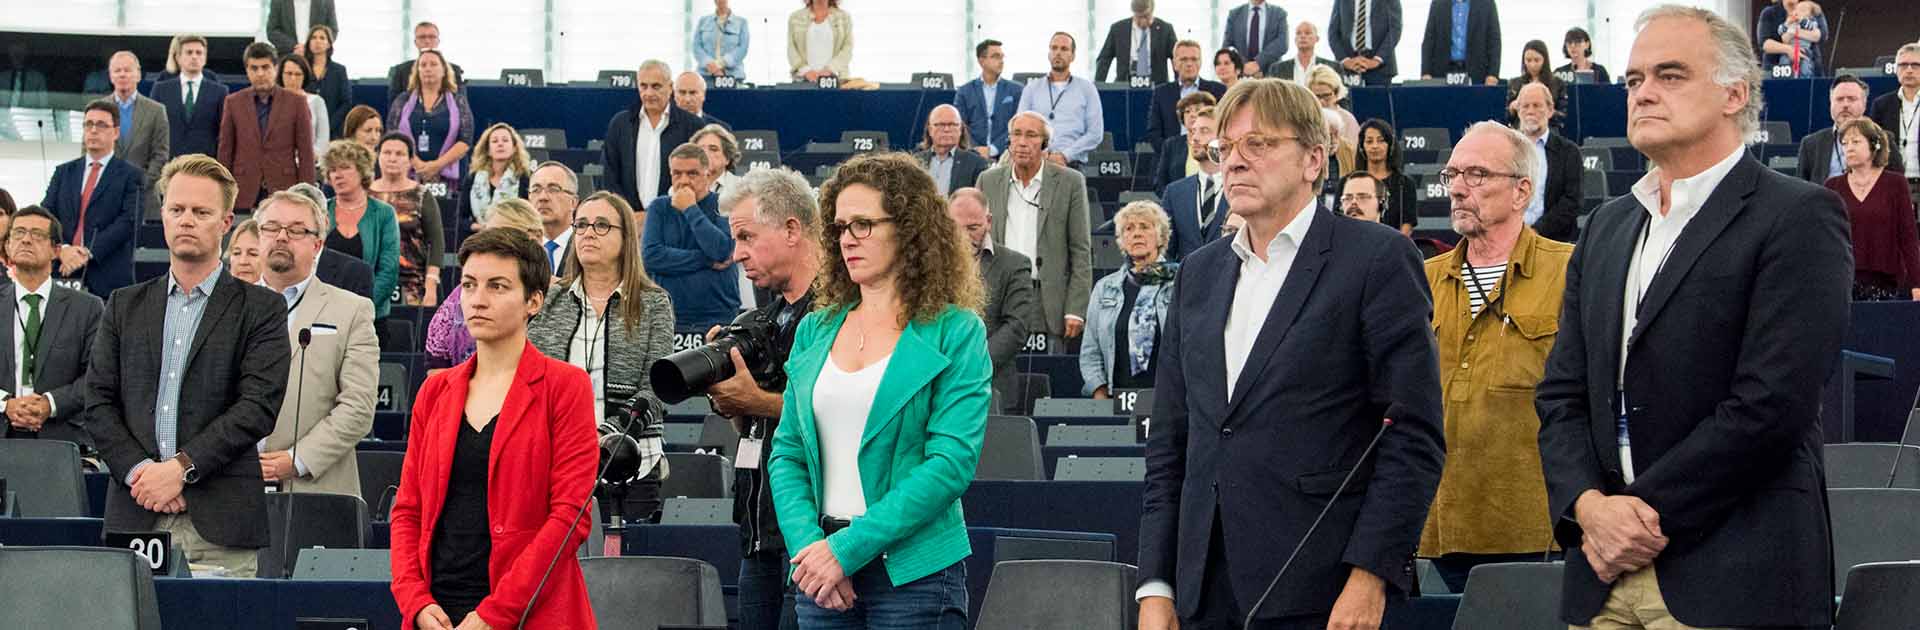 Minuto de silencio en el Parlamento Europeo por las víctimas del atentado de Barcelona, Cambrils y Turku (11/09/2017)